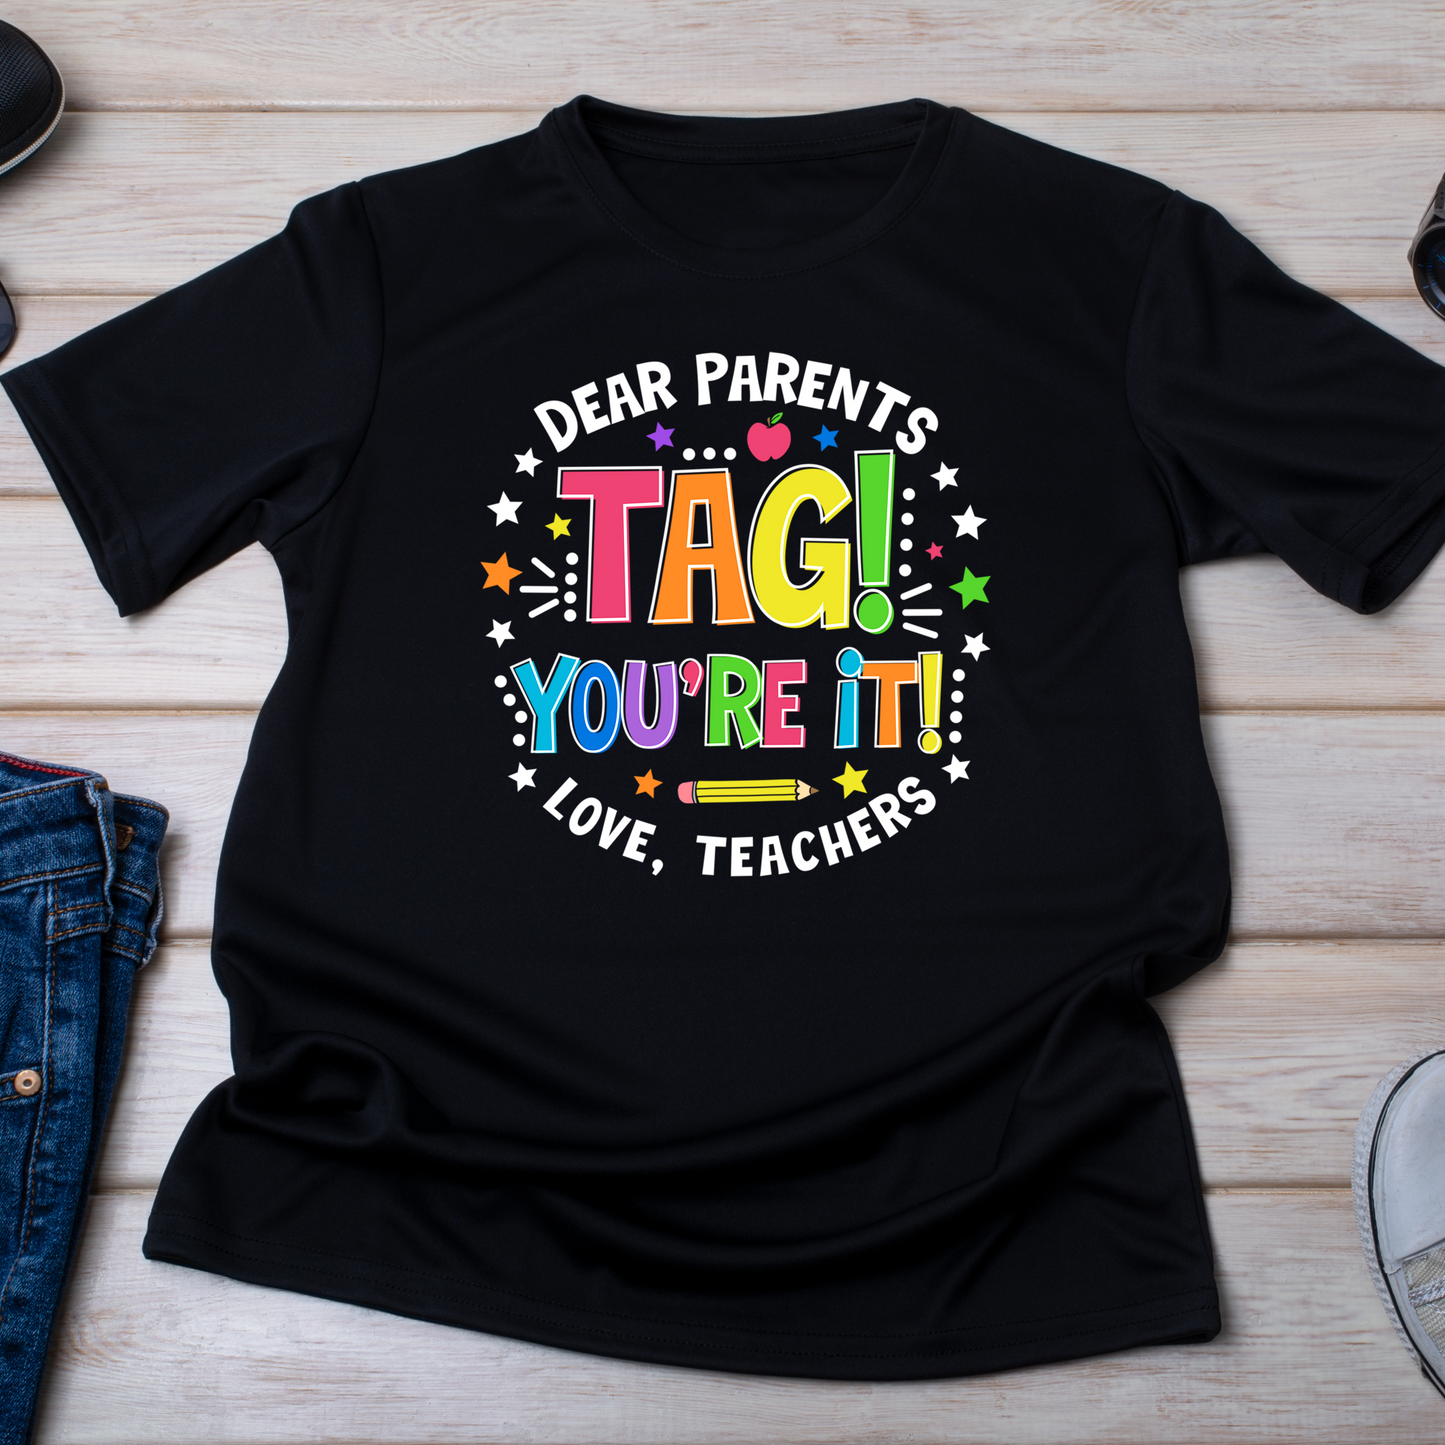 Dear Parents Tag Your It Love, Teachers